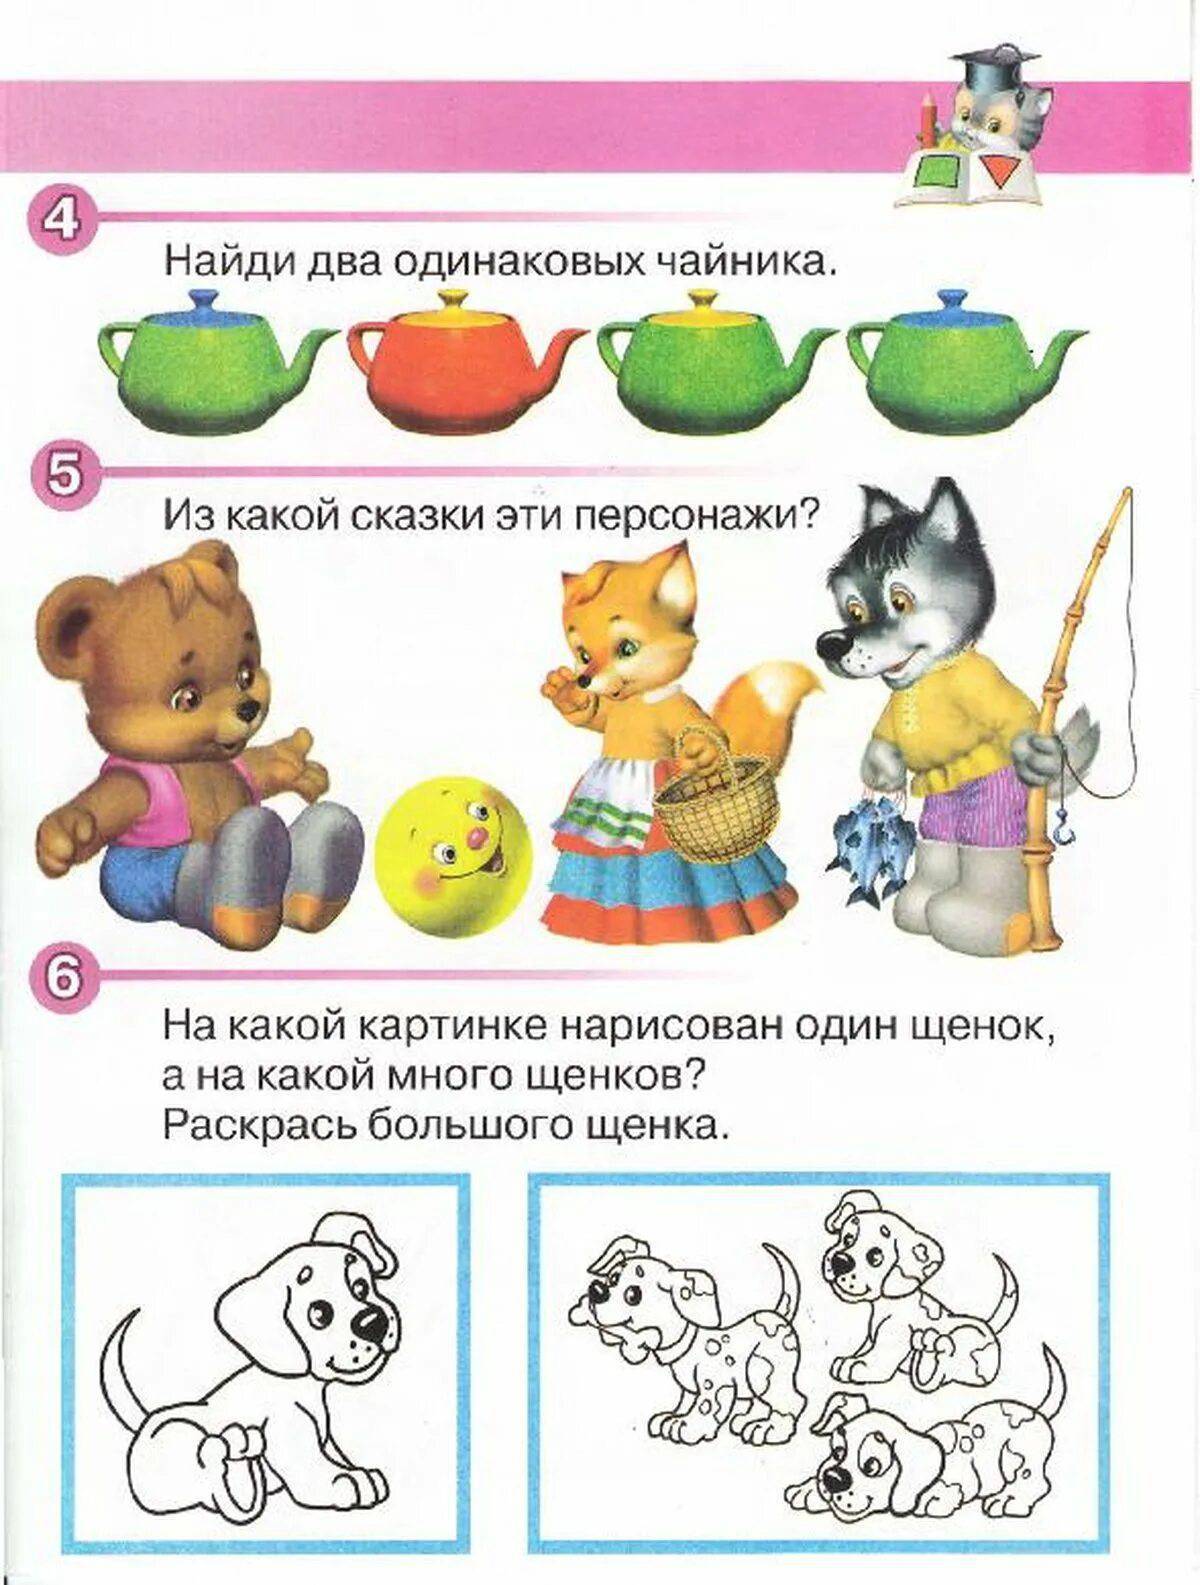 Читать малышам 4 года. Задания 3-4 года развиваем малыша. Развивающие упражнения для детей 4 лет. Познавательные задания для детей 3 года. Веселые занятия для детей 3-4 лет.